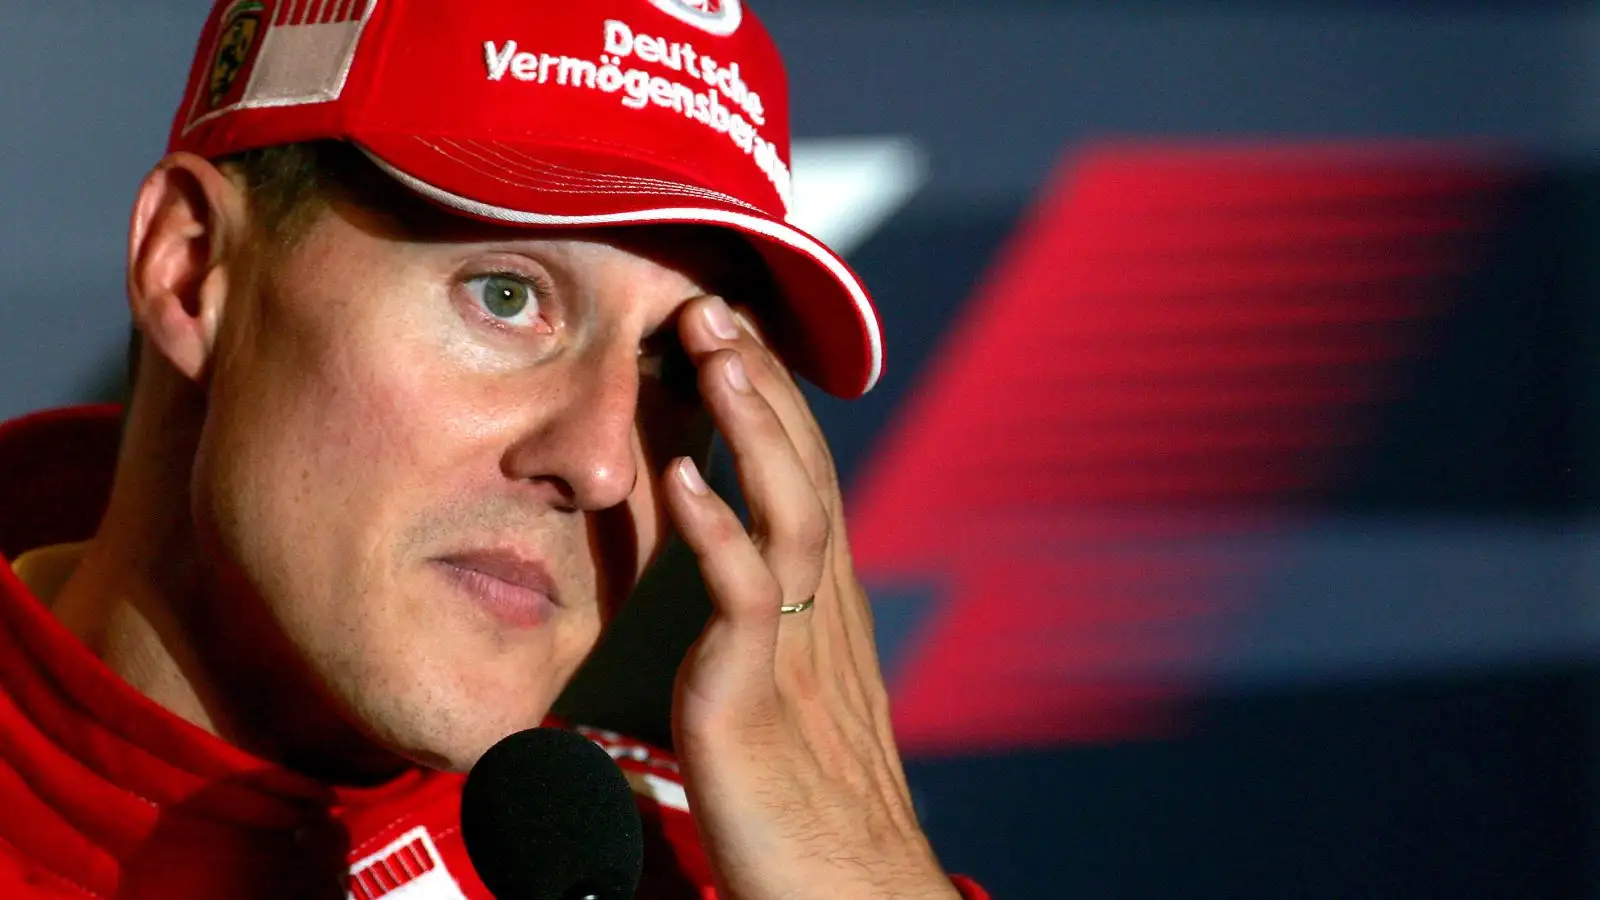 Michael Schumacher, 10 anni fa il terribile incidente sugli sci. Il fratello Ralf: "Niente è come prima"